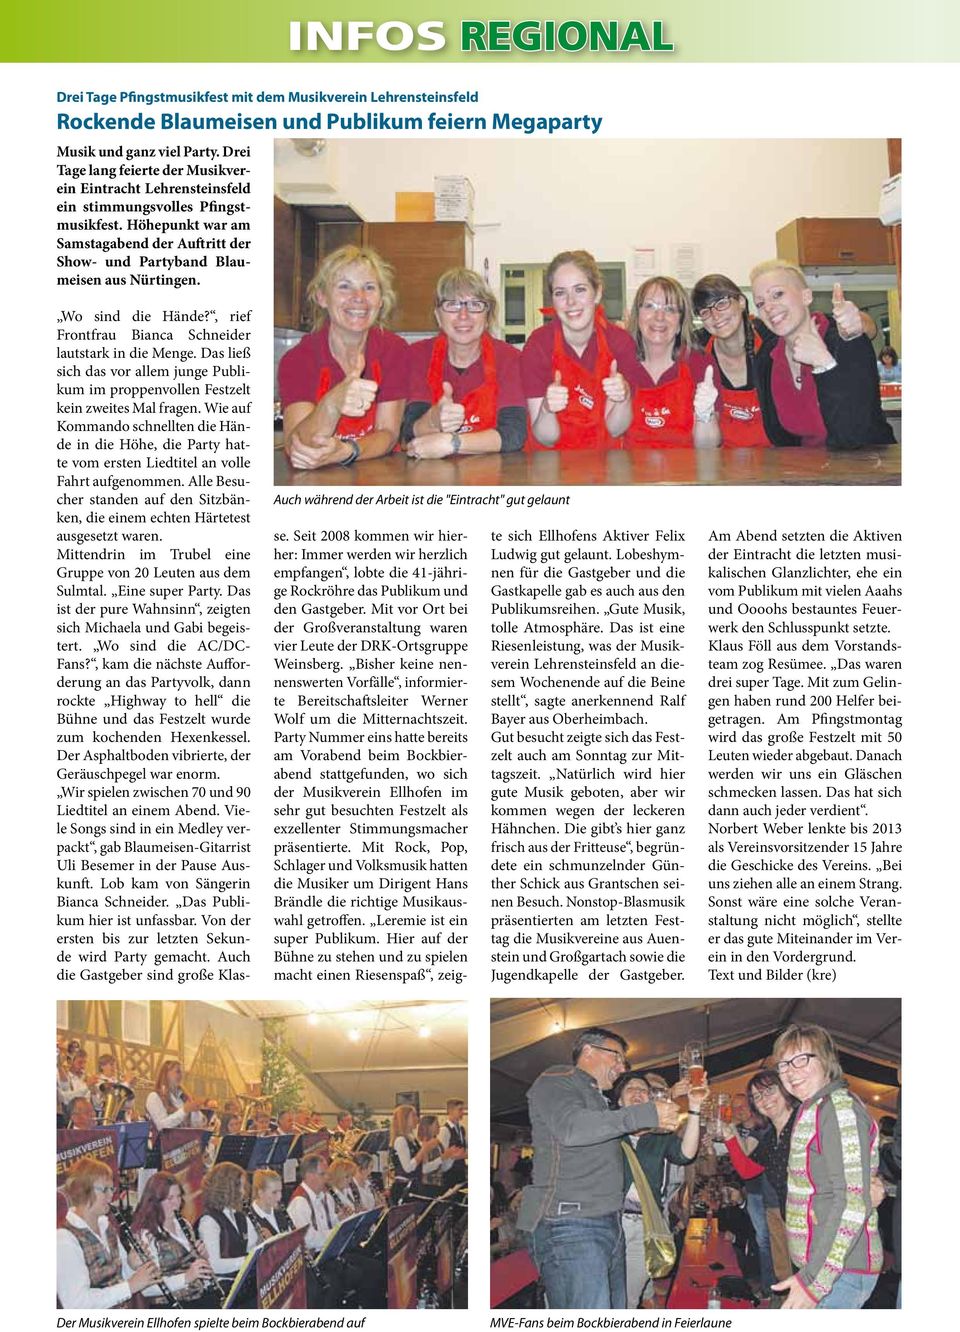 Drei Tage lang feierte der Musikverein Eintracht Lehrensteinsfeld ein stimmungsvolles Pfingstmusikfest. Höhepunkt war am Samstagabend der Auftritt der Show- und Partyband Blaumeisen aus Nürtingen.